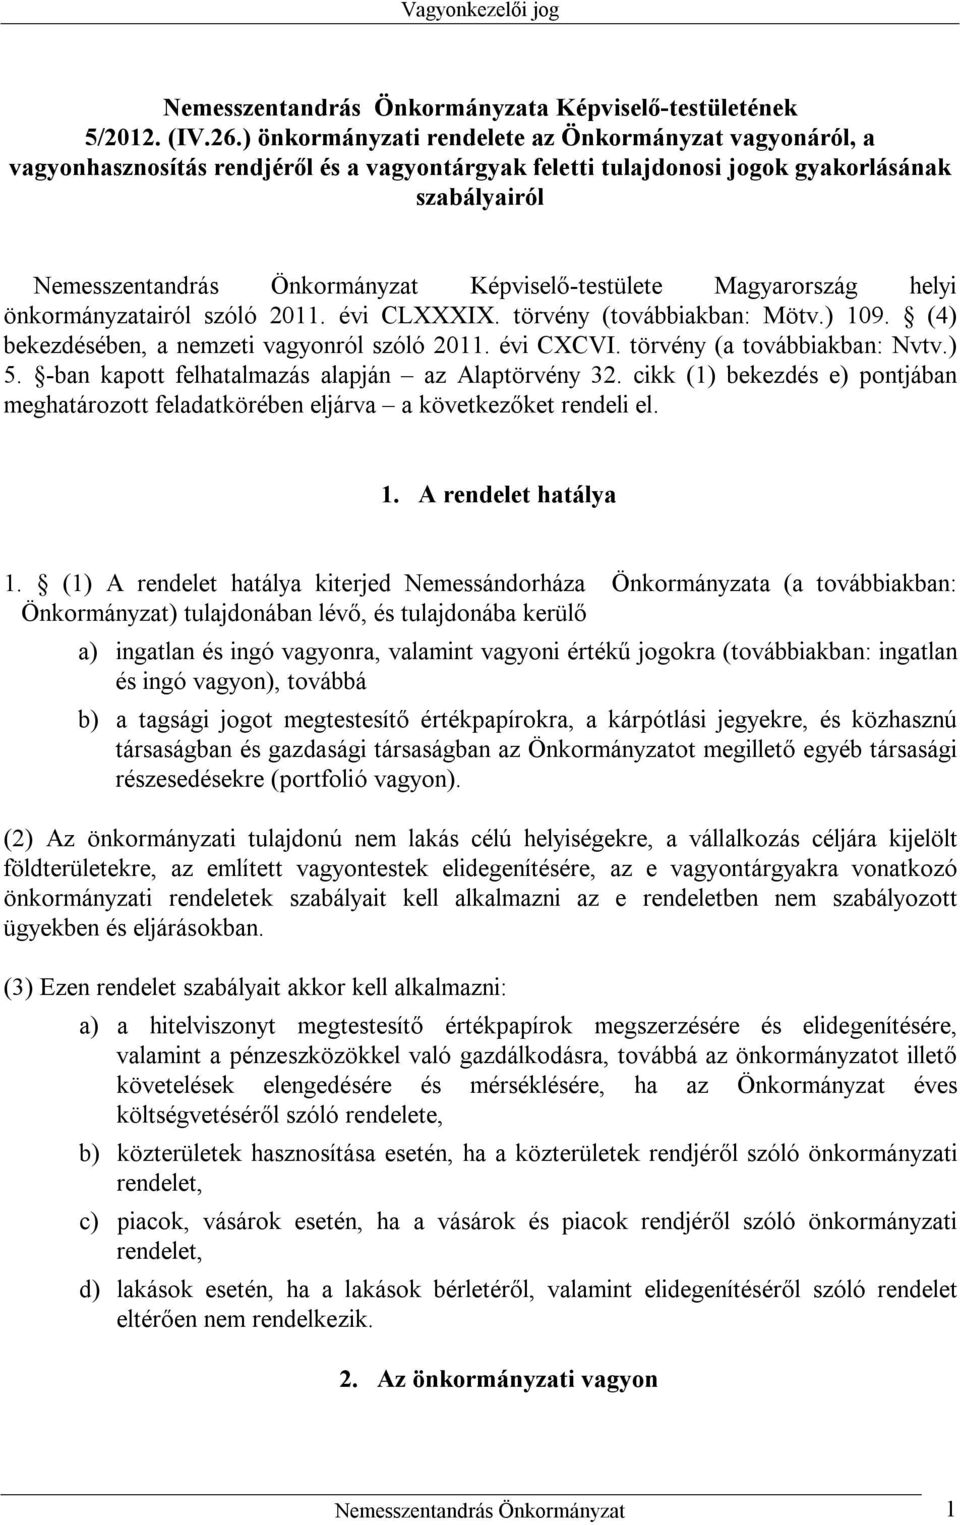 Képviselő-testülete Magyarország helyi önkormányzatairól szóló 2011. évi CLXXXIX. törvény (továbbiakban: Mötv.) 109. (4) bekezdésében, a nemzeti vagyonról szóló 2011. évi CXCVI.